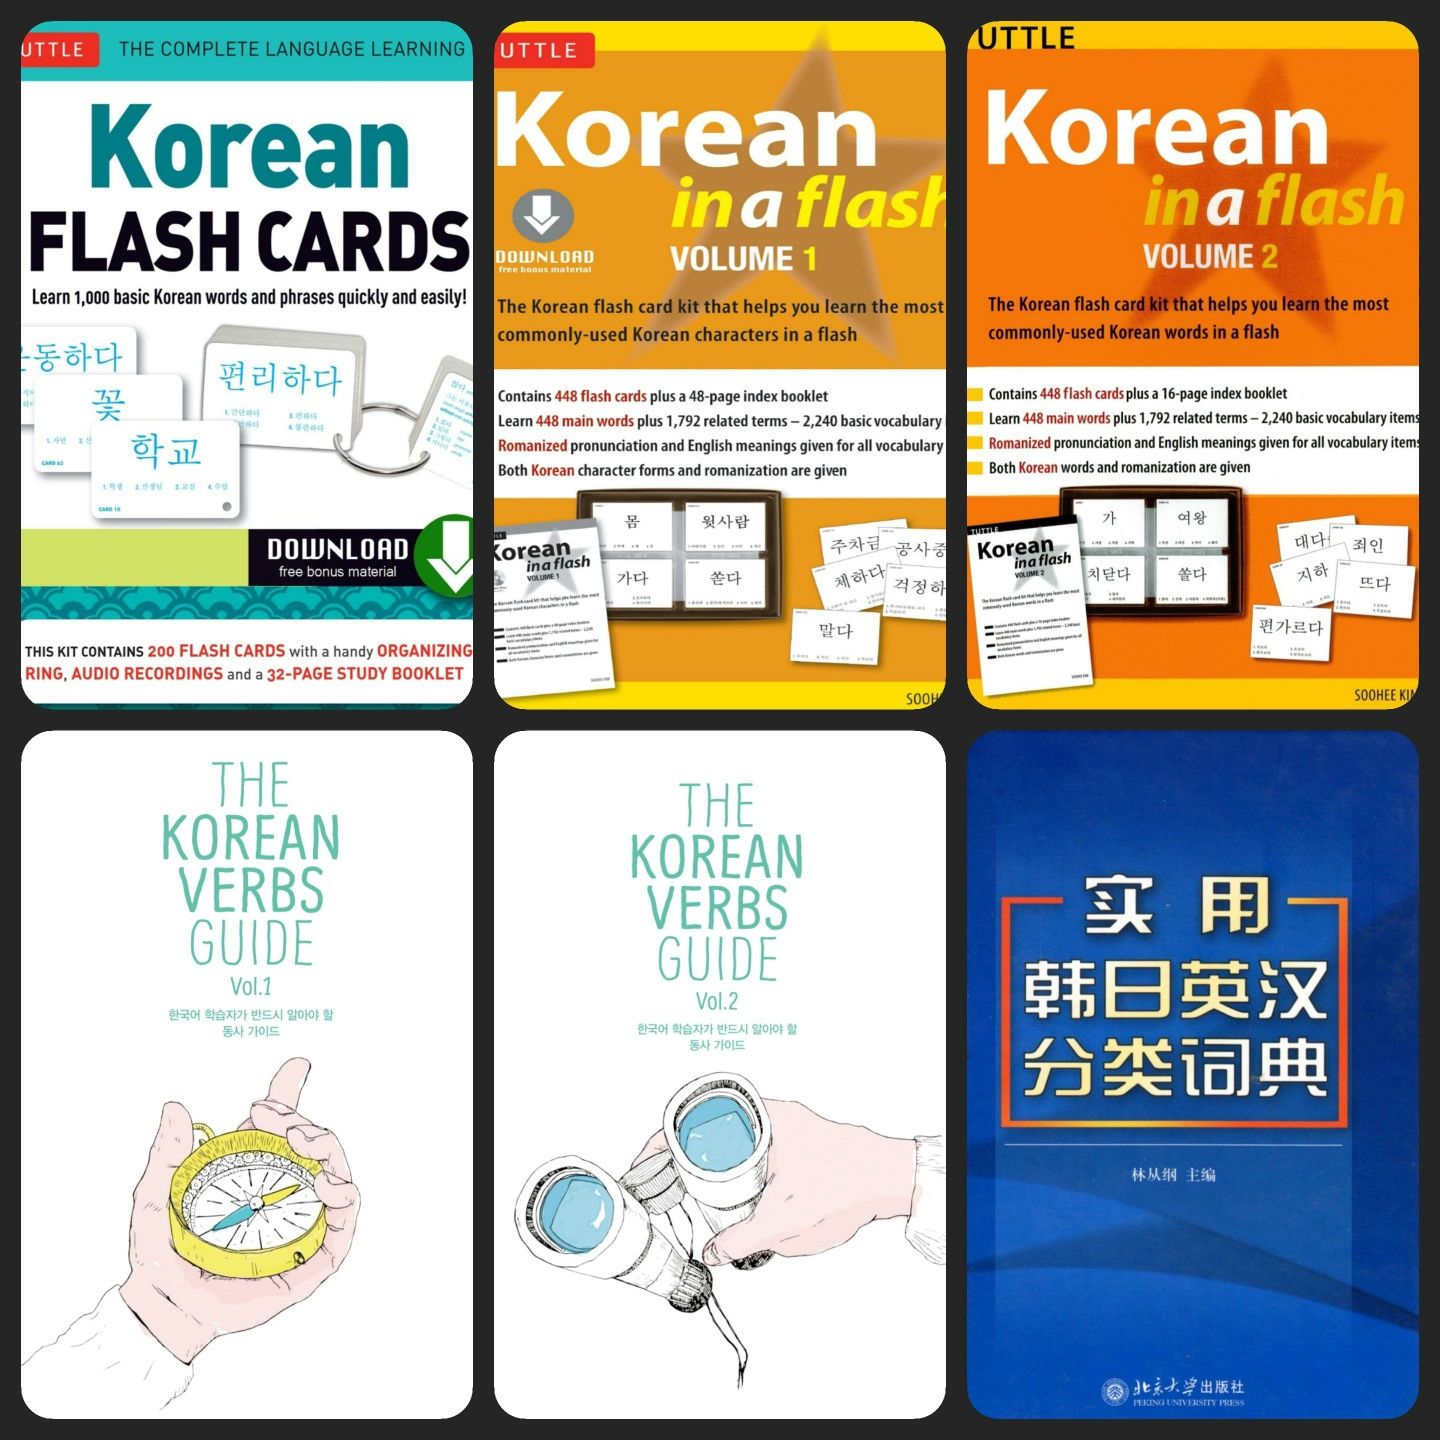 Підручники | книги | словники | корейська мова | формат P D F